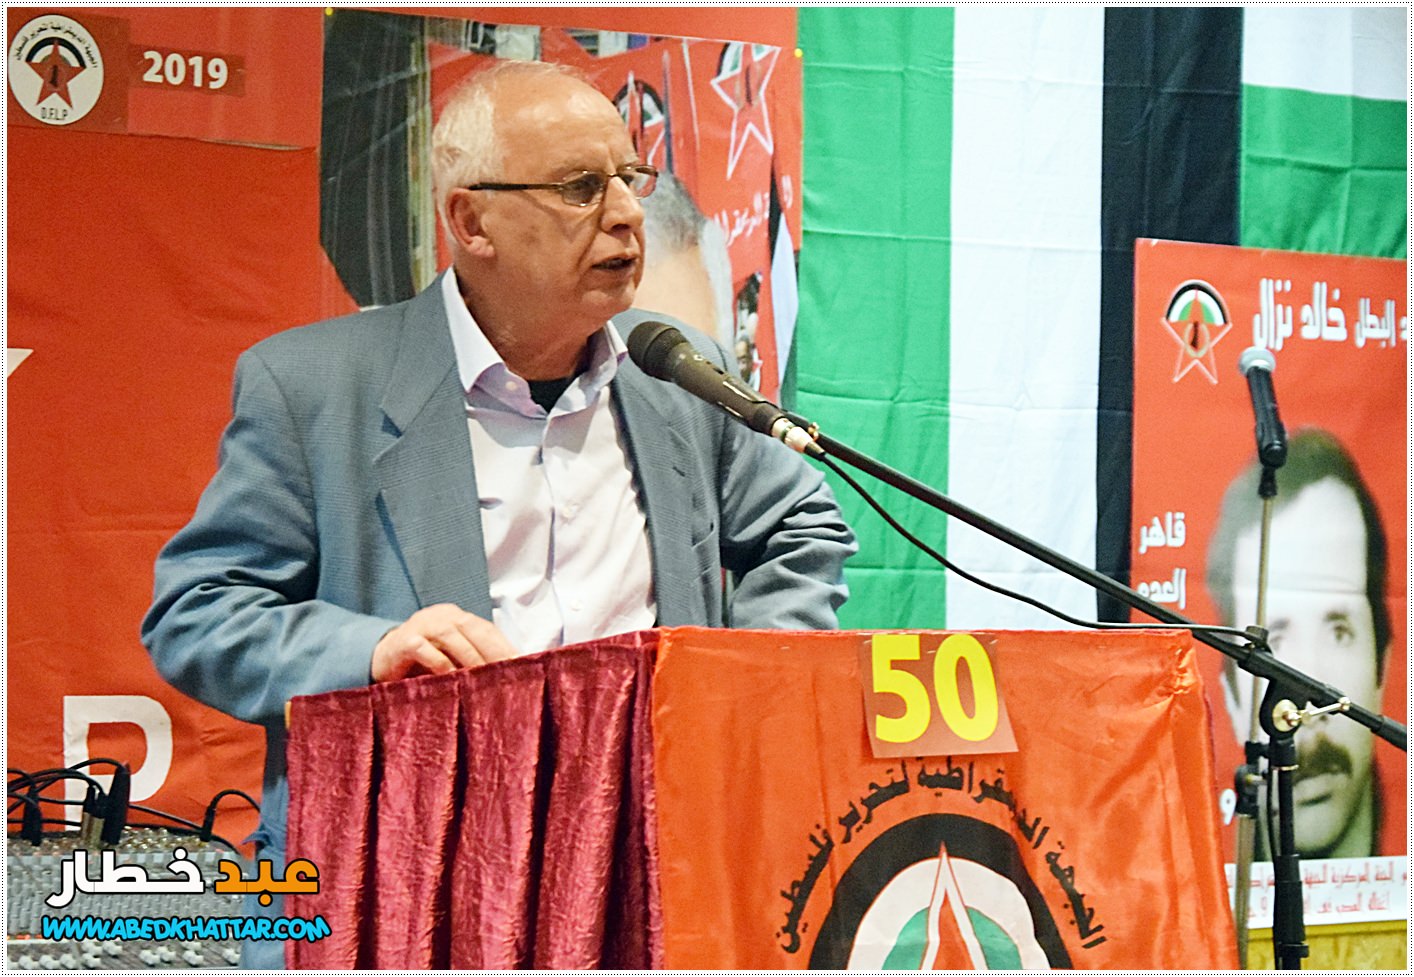 الدكتور عوض حجازي كلمة حركة التحرير الوطني الفلسطيني فتح